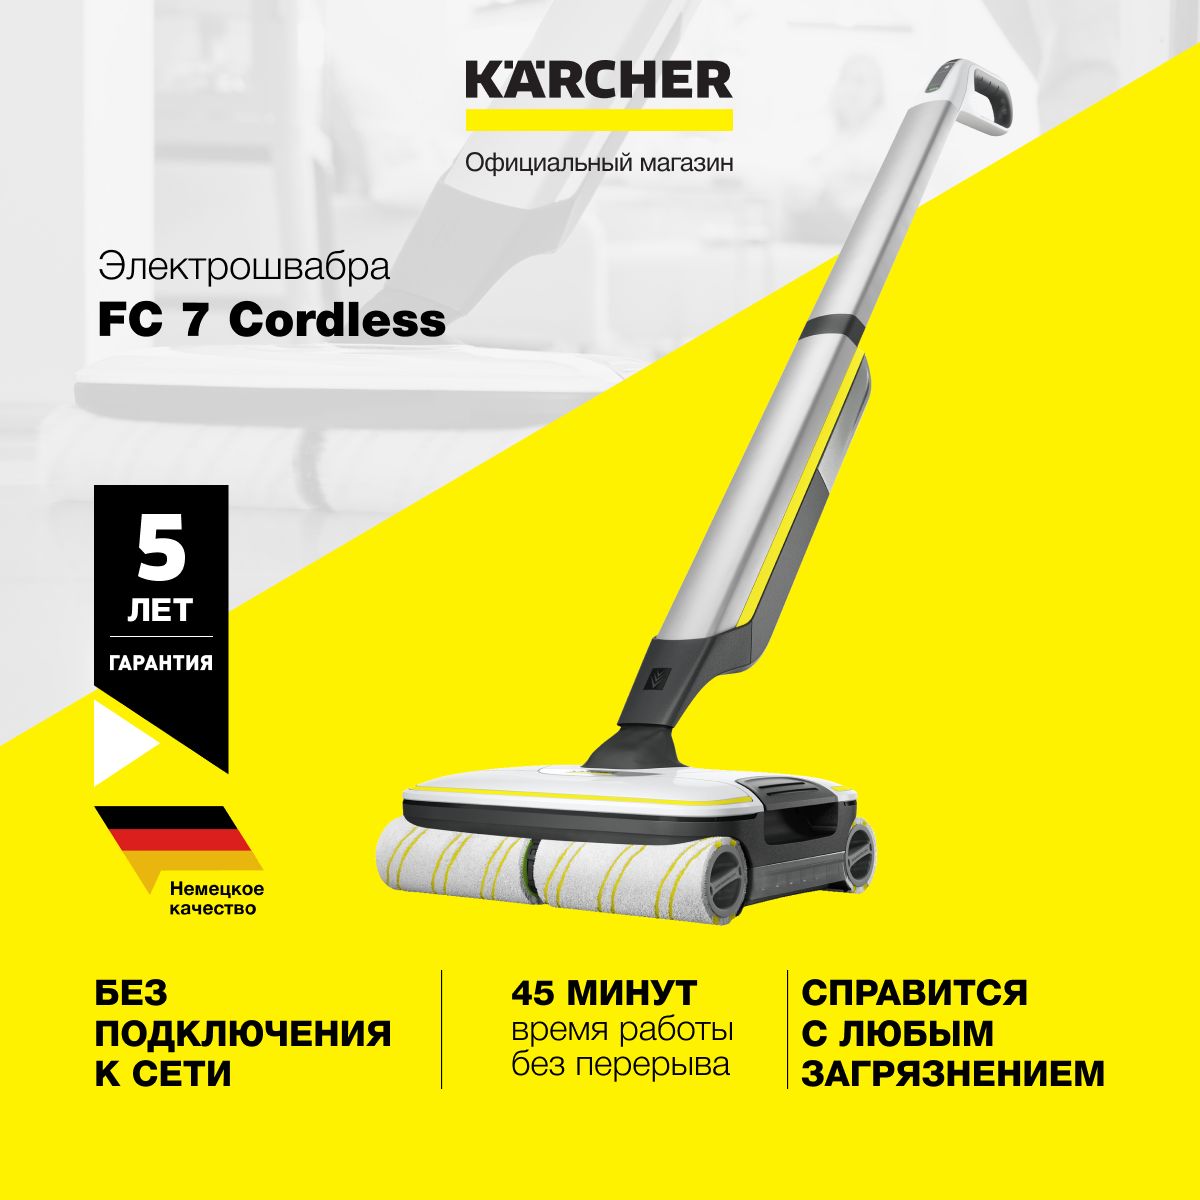 Керхер fc7 купить. Karcher FC 7 Cordless Premium. Беспроводная электрошвабра Karcher fc7 Cordless Premium. Электрошвабра Karcher FC 7 Cordless. Швабра Karcher fc7.